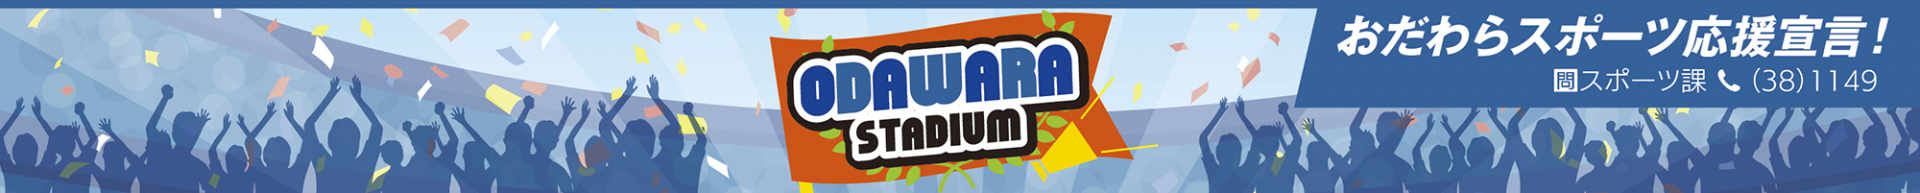 「ODAWARA STADIUM」ロゴ